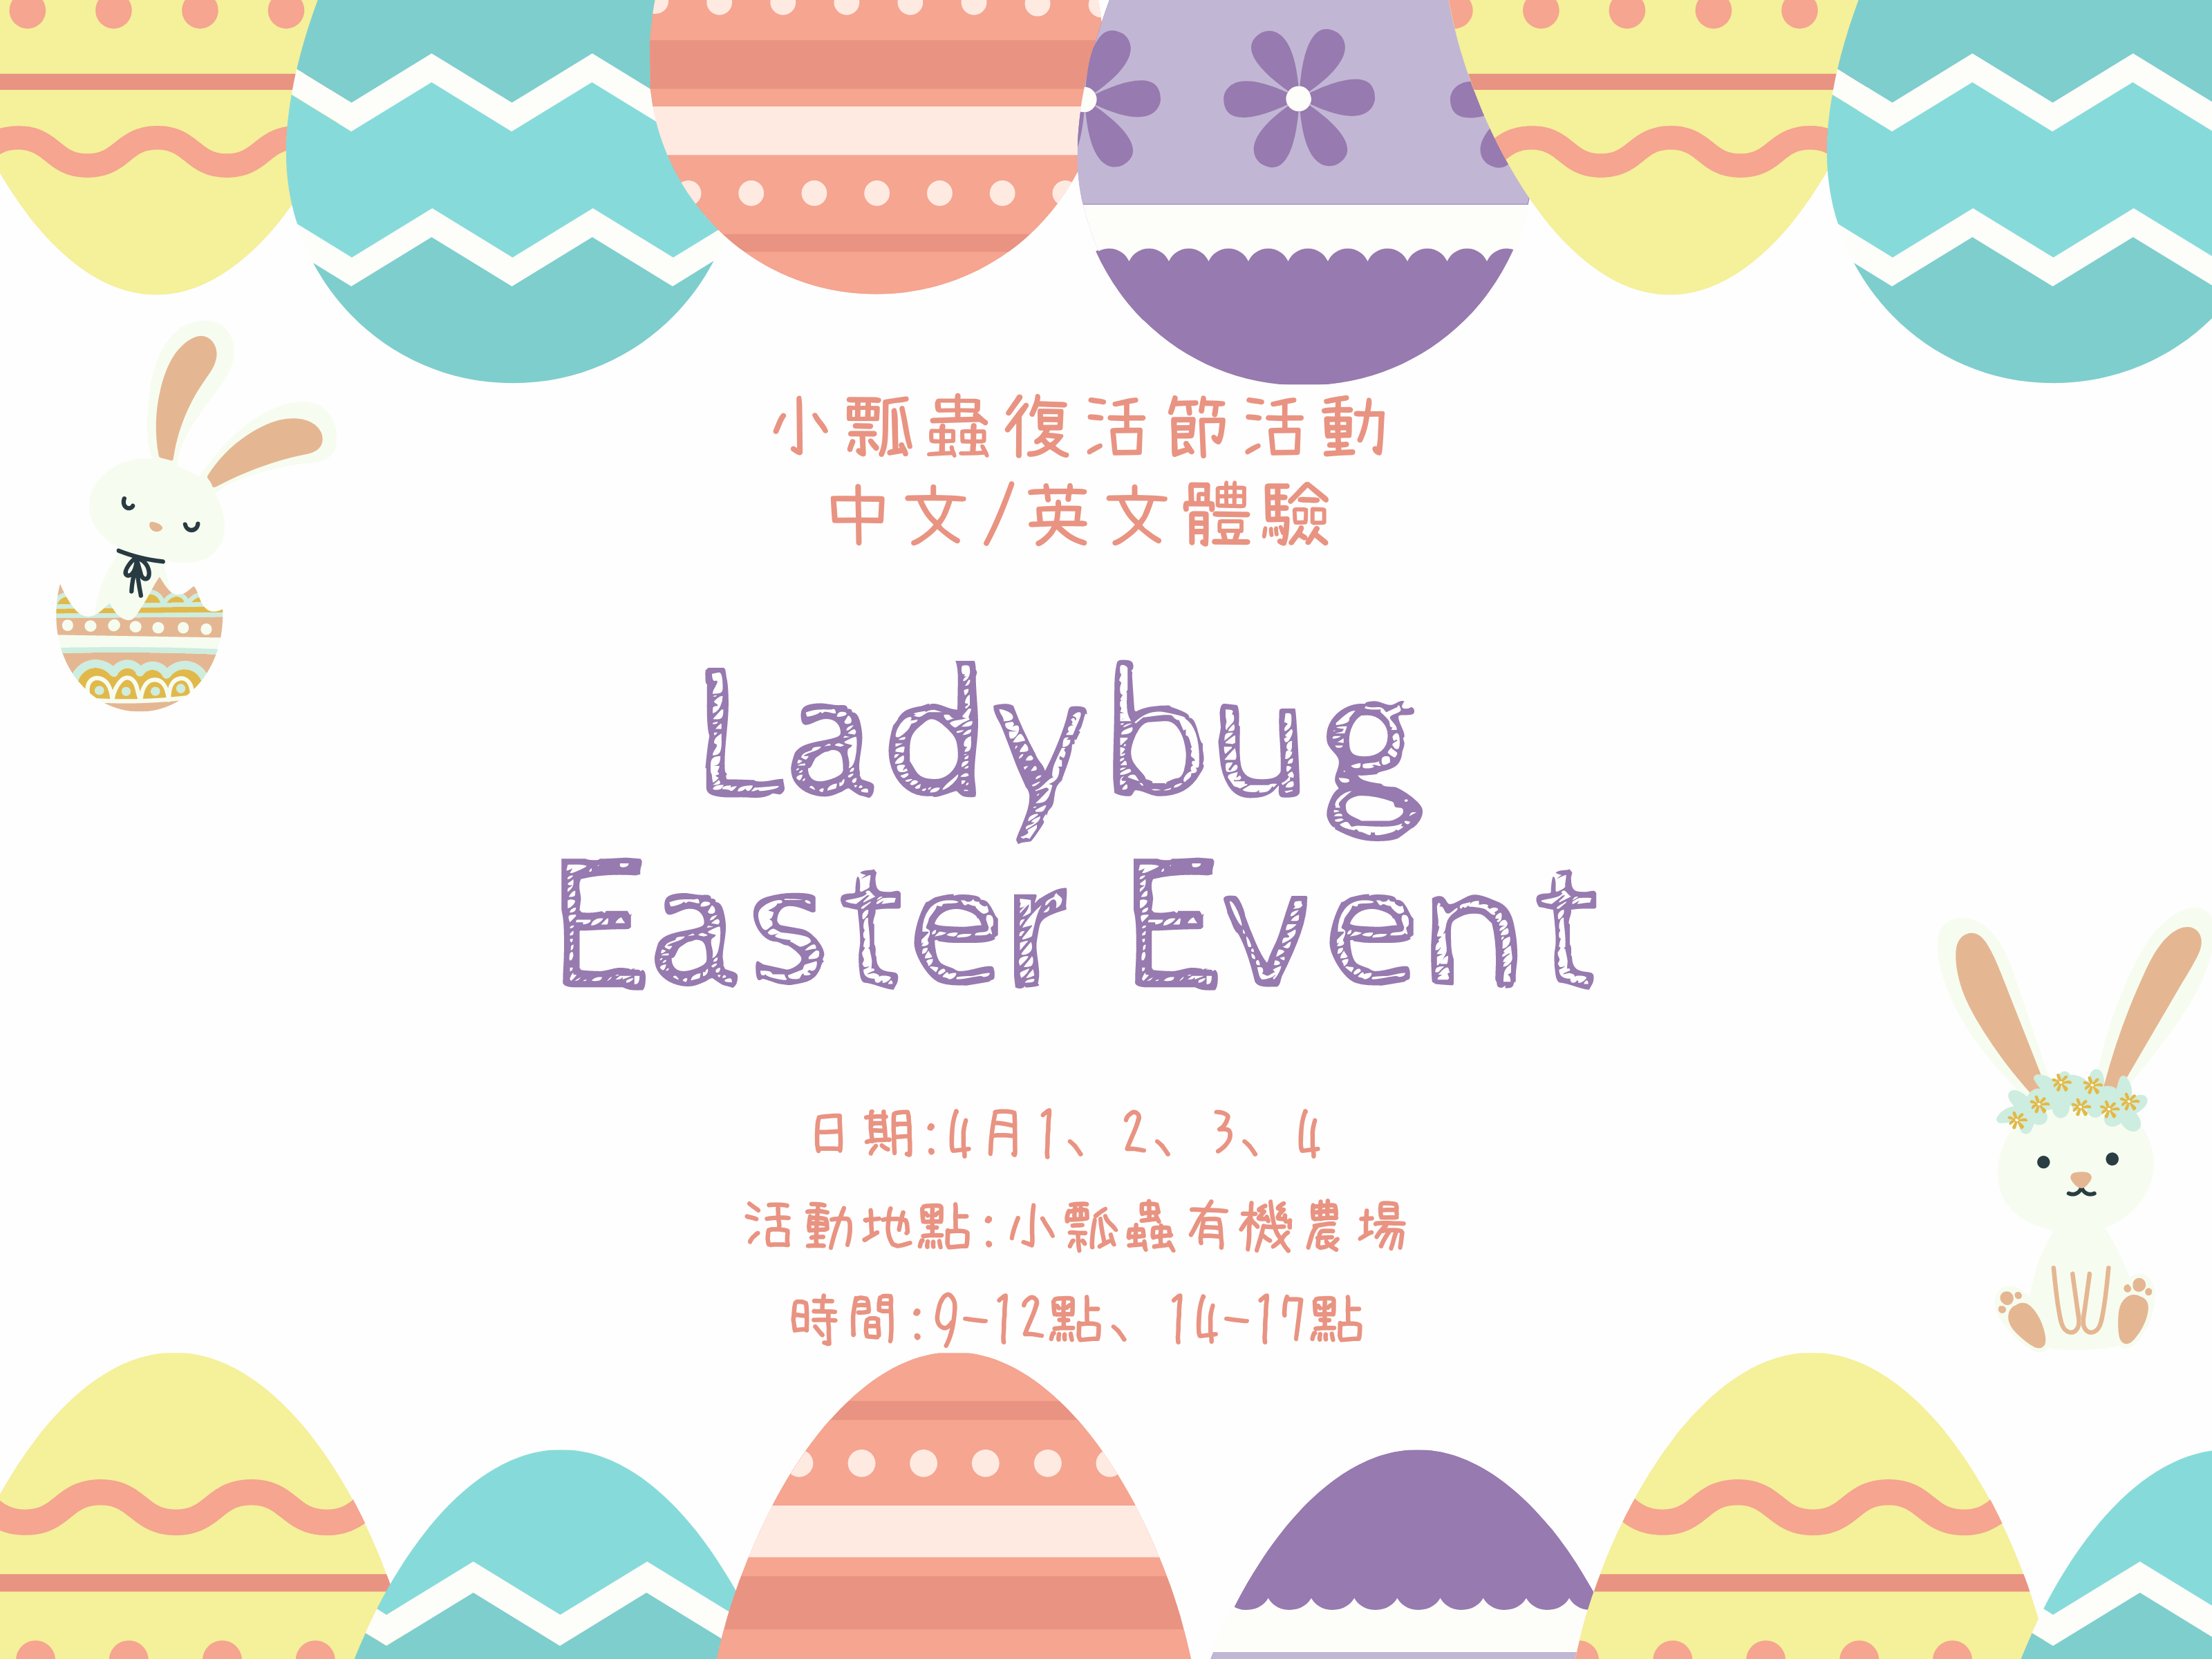 【清明連假散客預約】- 英文小瓢蟲復活節x Ladybug Easter Event ! ! -